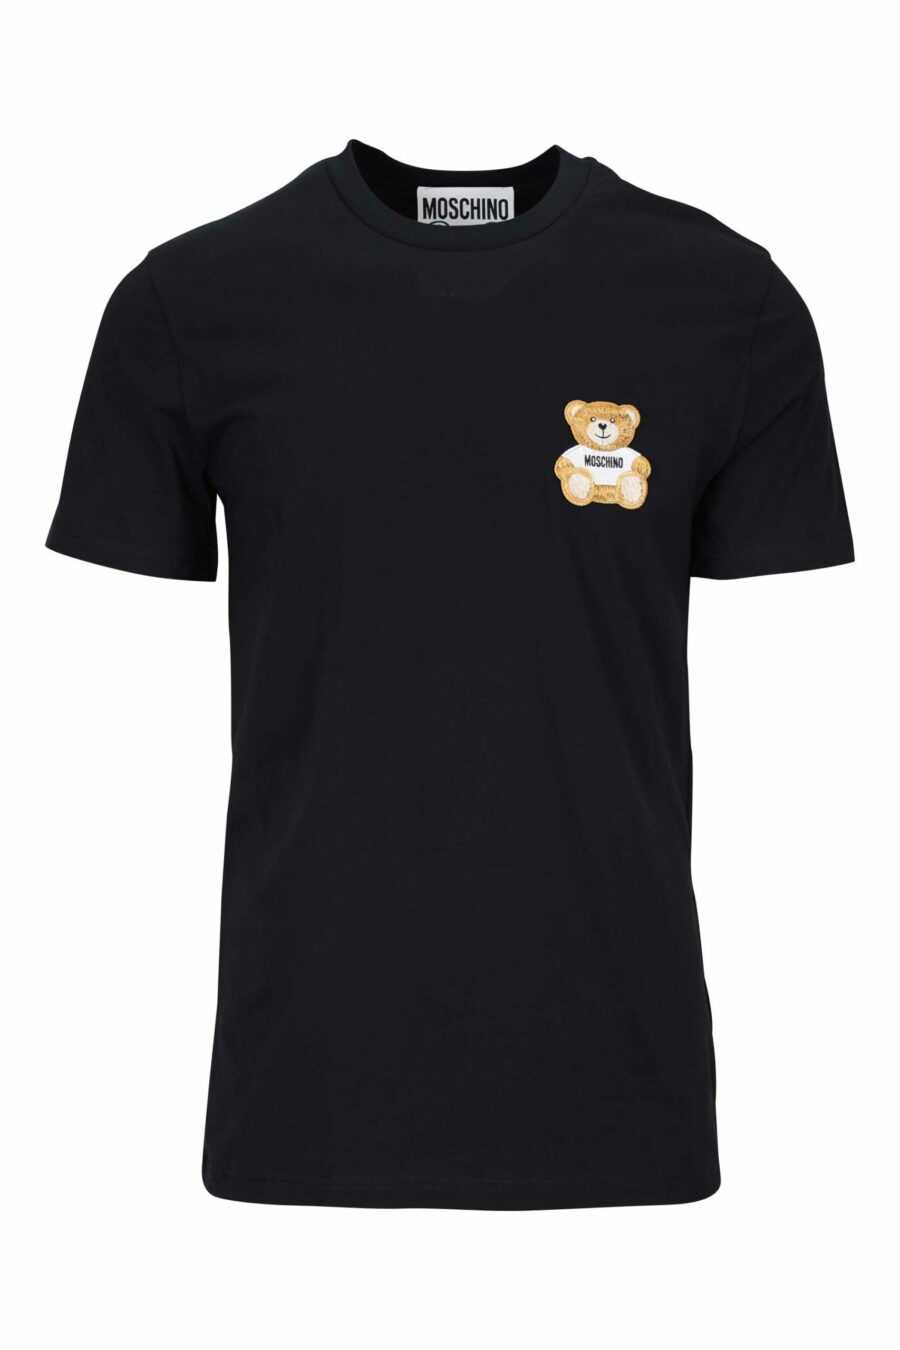 T-shirt preta com minilogo "teddy" bordado - 667113455549 scaled